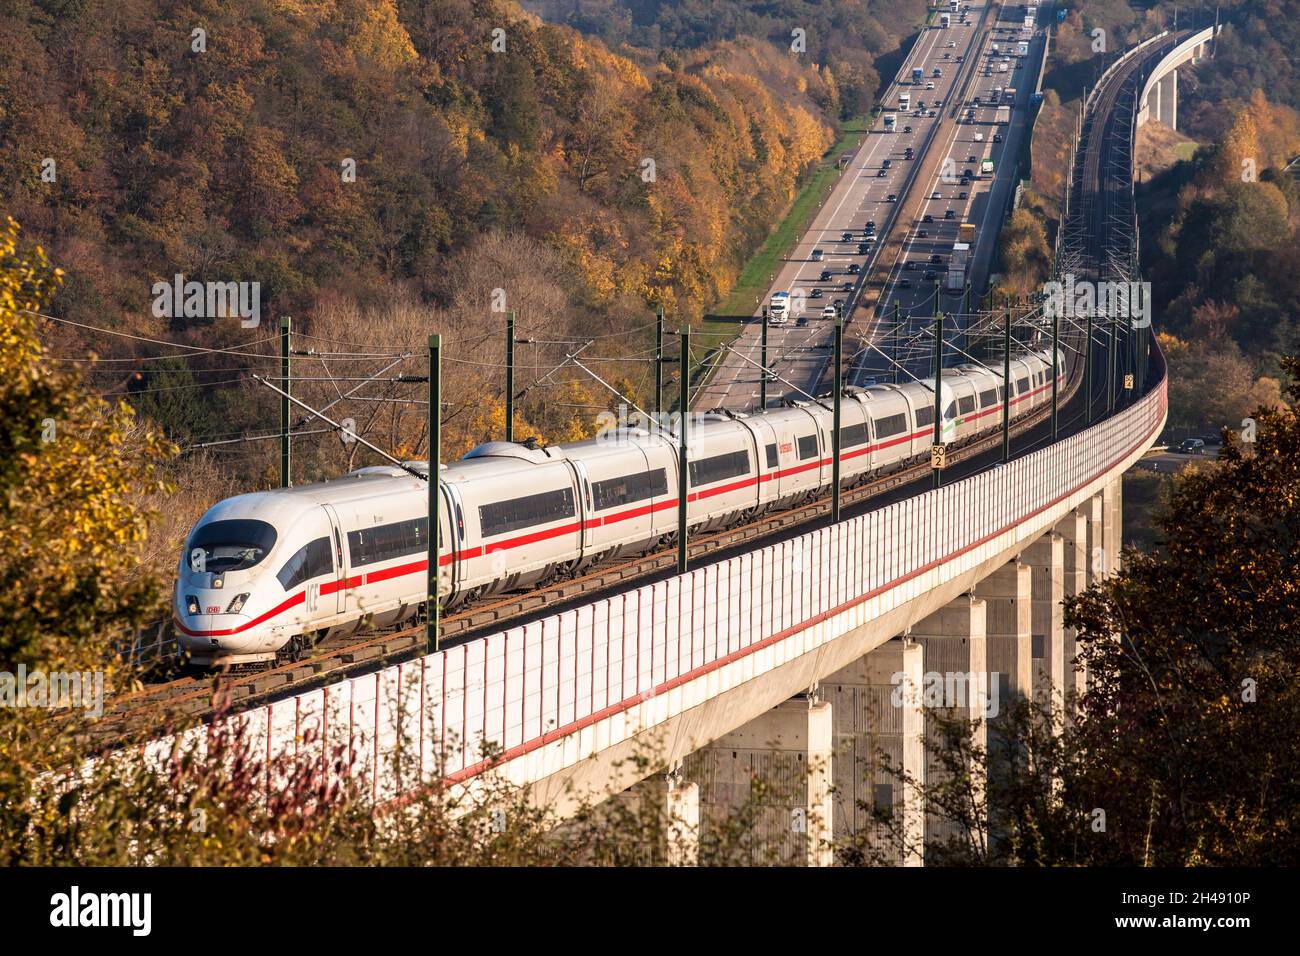 Treno ad alta velocità ICE 3 della Deutsche Bahn AG sulla linea ad alta velocità da Francoforte a Colonia, autostrada A3, ponte Hallerbachtal, Neustadt Wied, Reno Foto Stock